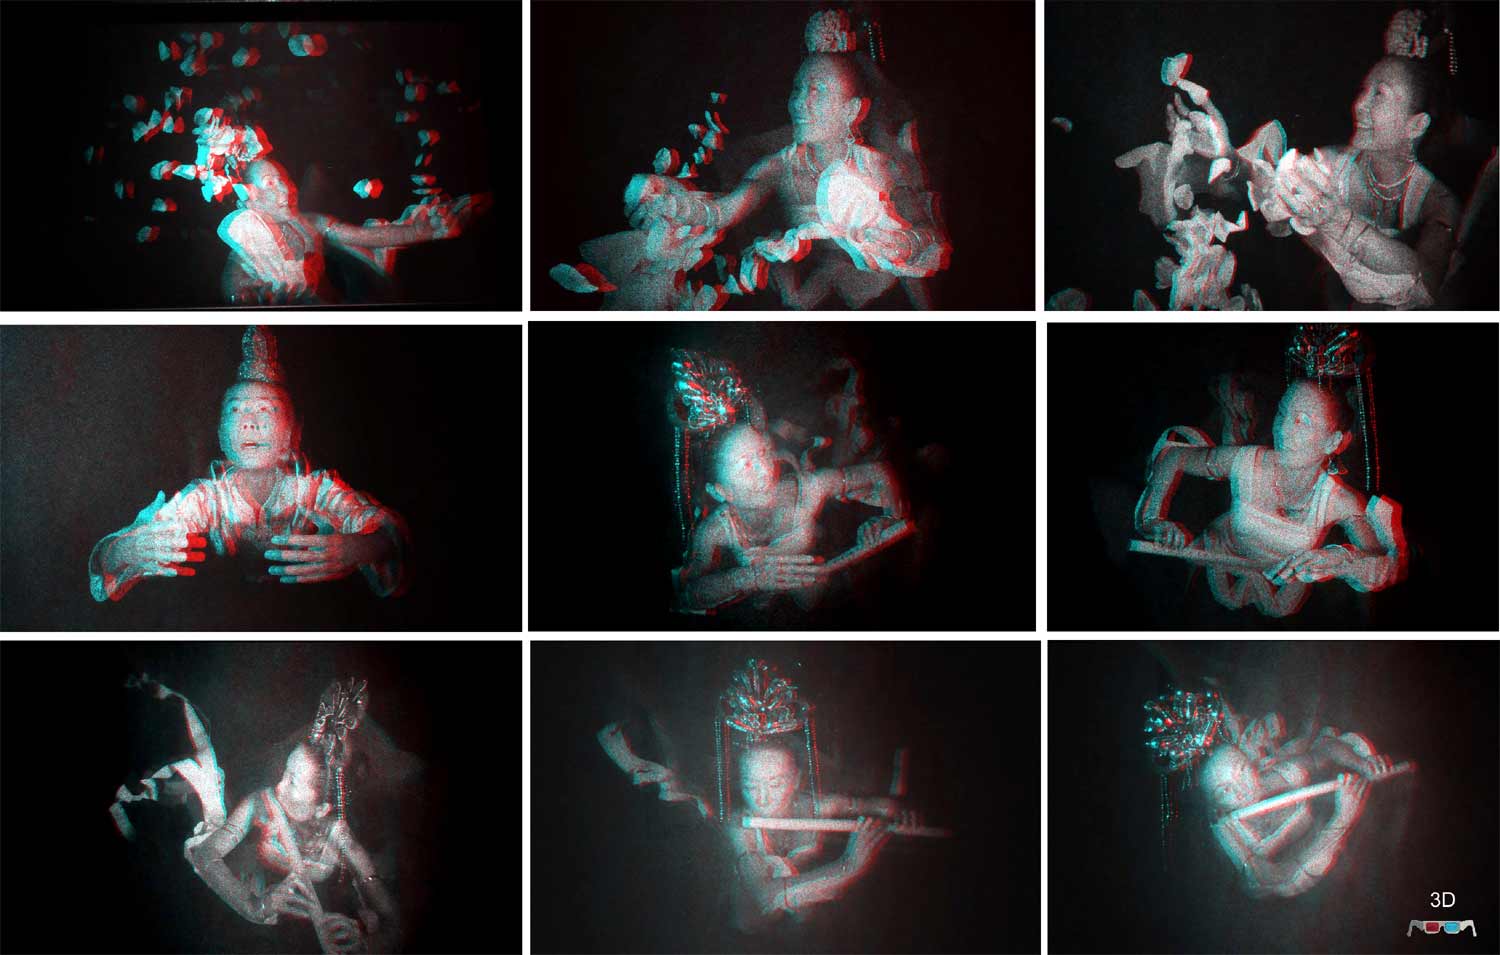  anaglyph 3D image - Apsaras by Al Razutis 2013 pulsed laser master transmission holograms